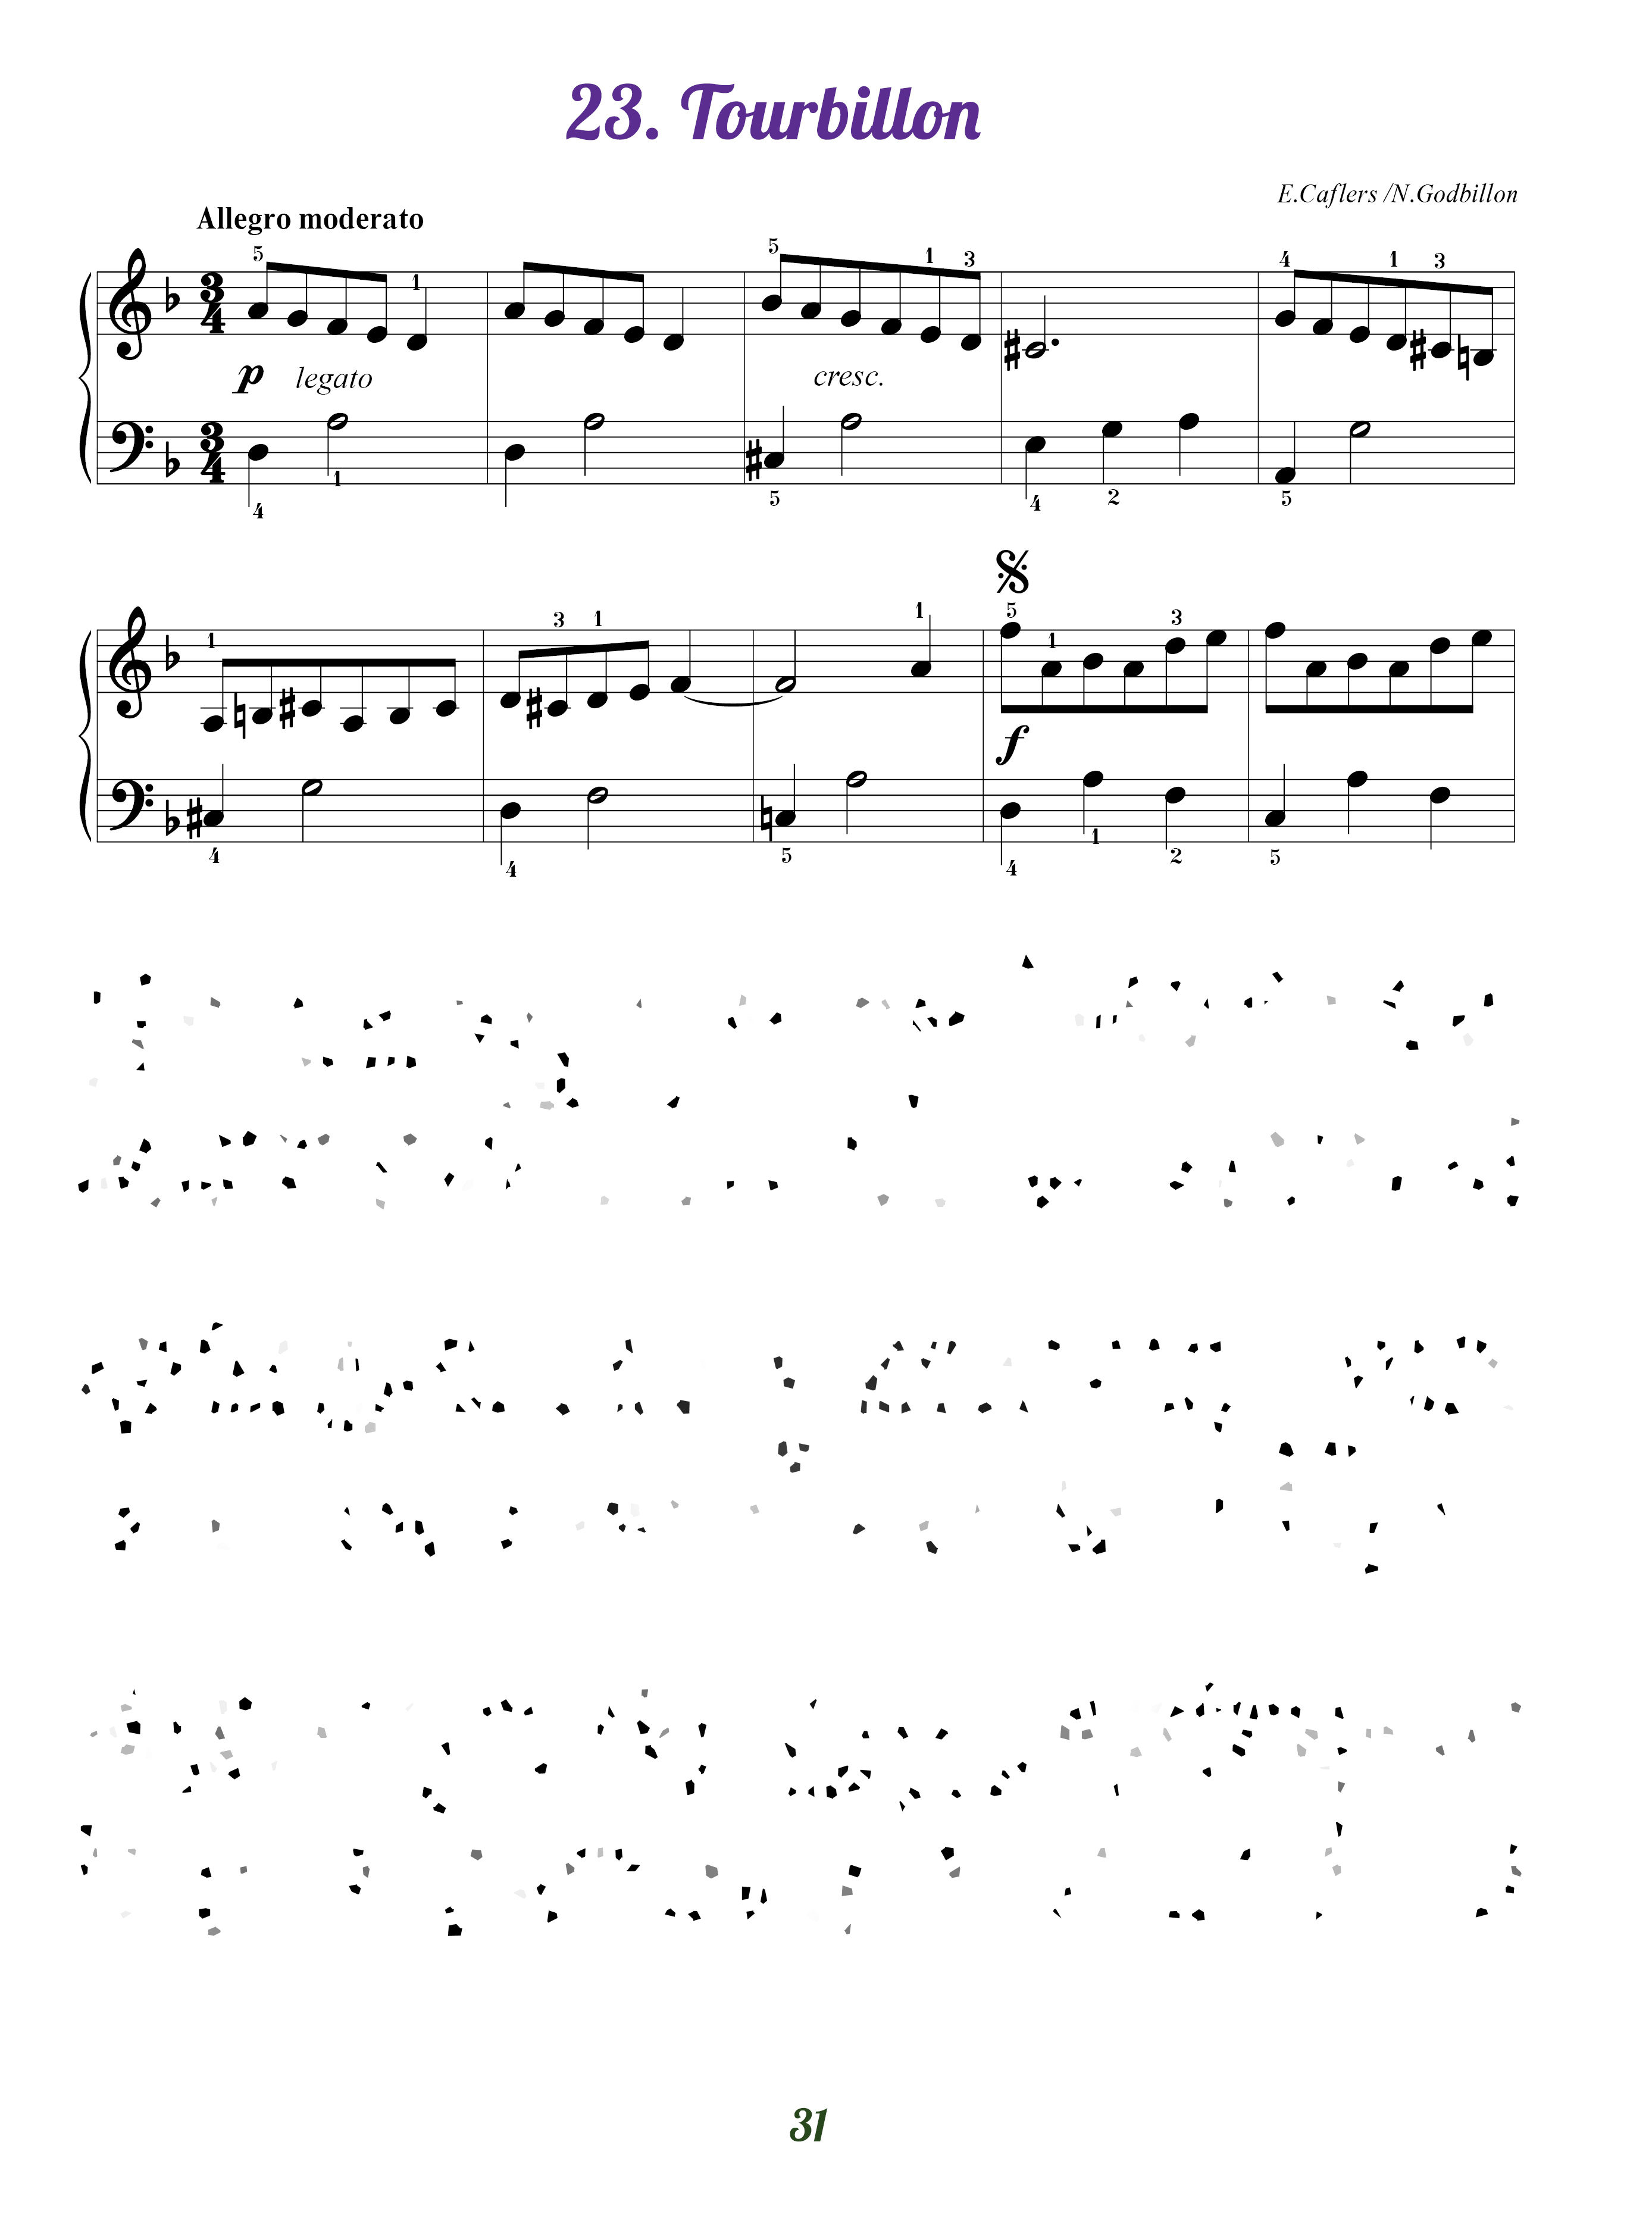 Jouons du piano volume 1 - Méthode de Piano por débutant